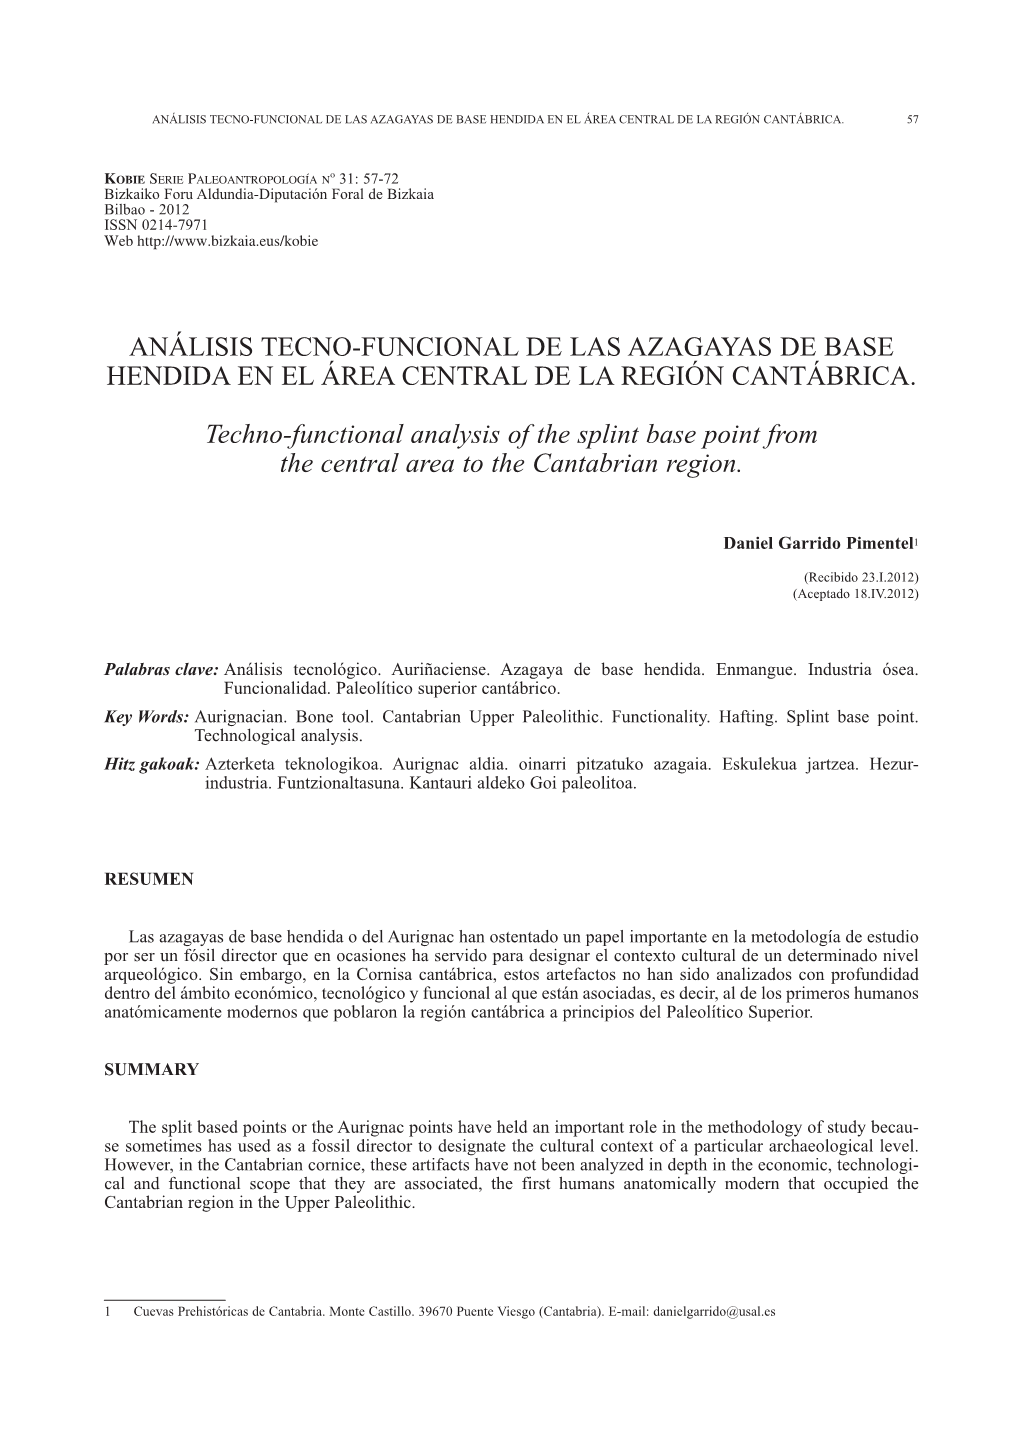 ANÁLISIS TECNO-FUNCIONAL DE LAS Azagayas DE BASE HENDIDA EN EL ÁREA CENTRAL DE LA REGIÓN CANTÁBRICA